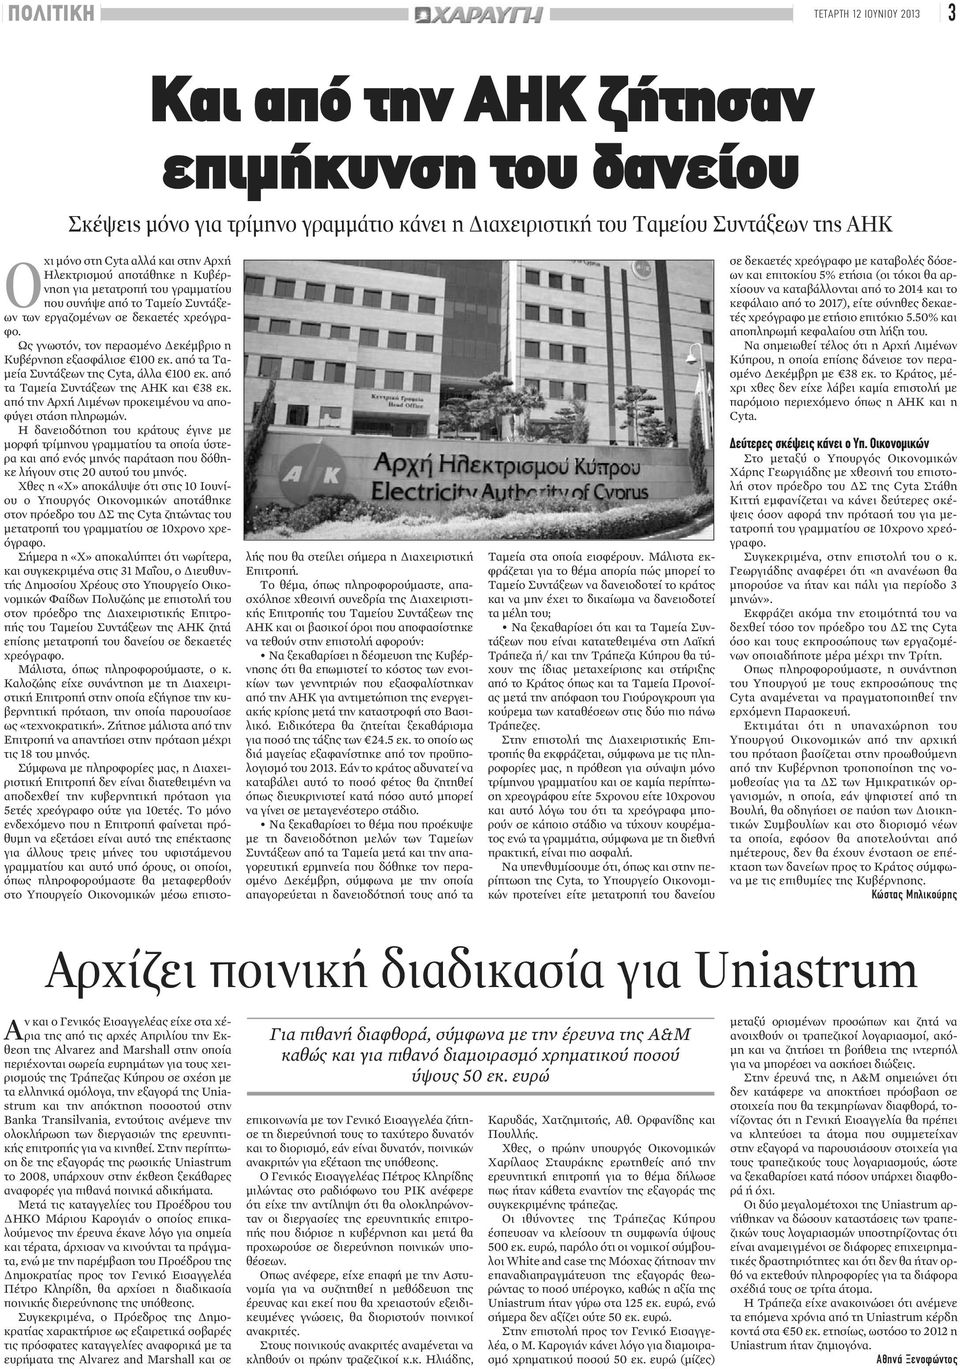 εξαγορά της Uniastrum και την απόκτηση ποσοστού στην Banka Transilvania, εντούτοις ανέμενε την ολοκλήρωση των διεργασιών της ερευνητικής επιτροπής για να κινηθεί.